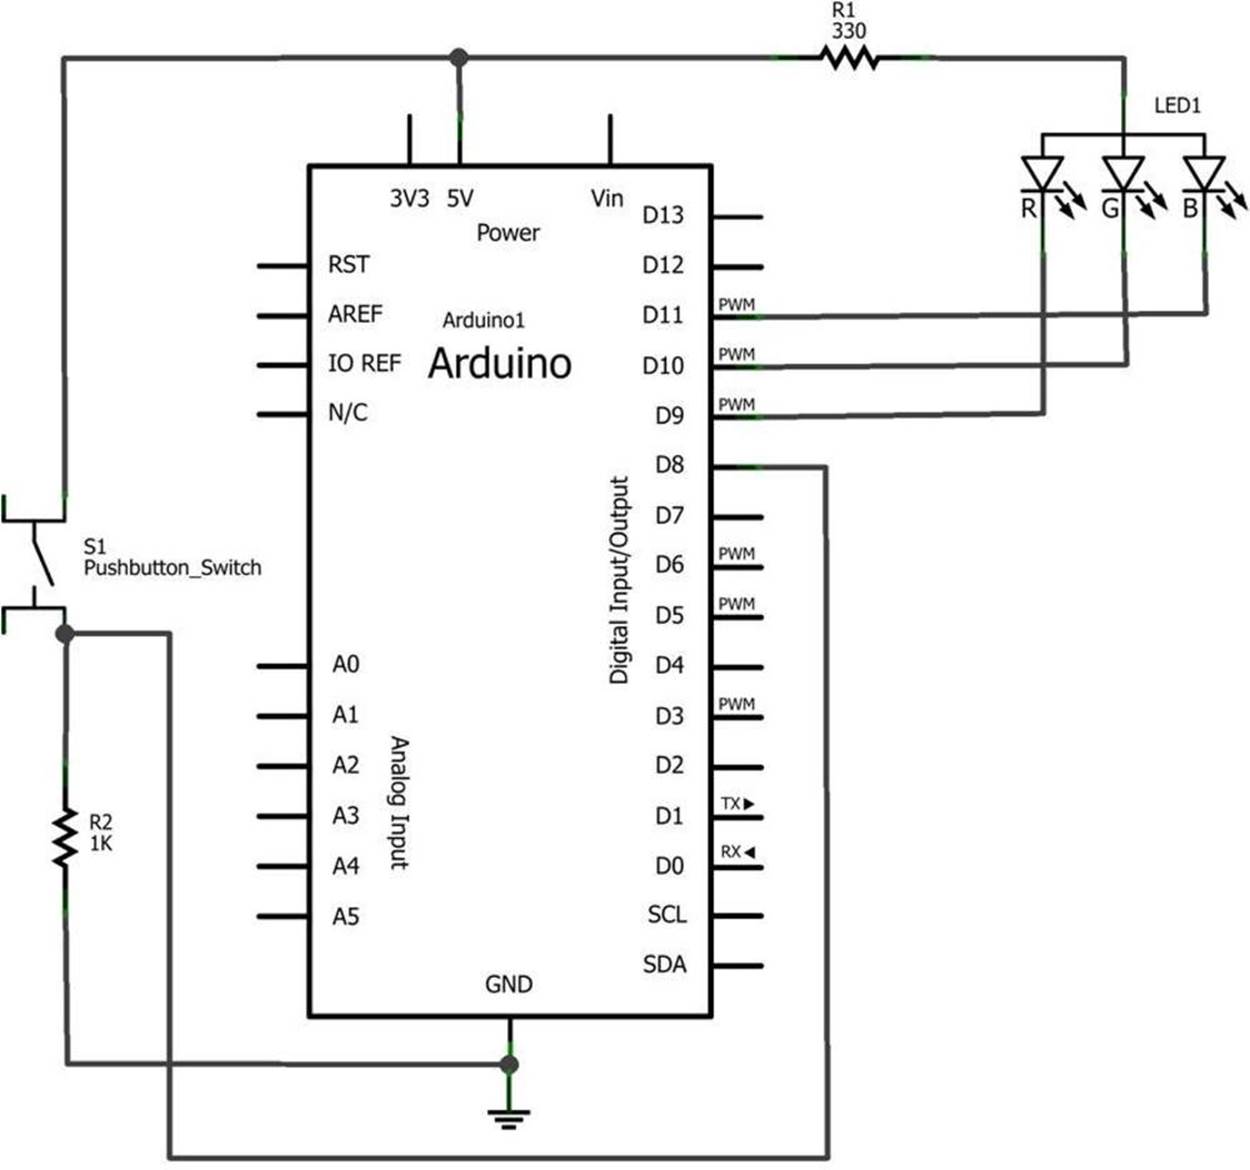 The Magic Light Bulb circuit schematic diagram